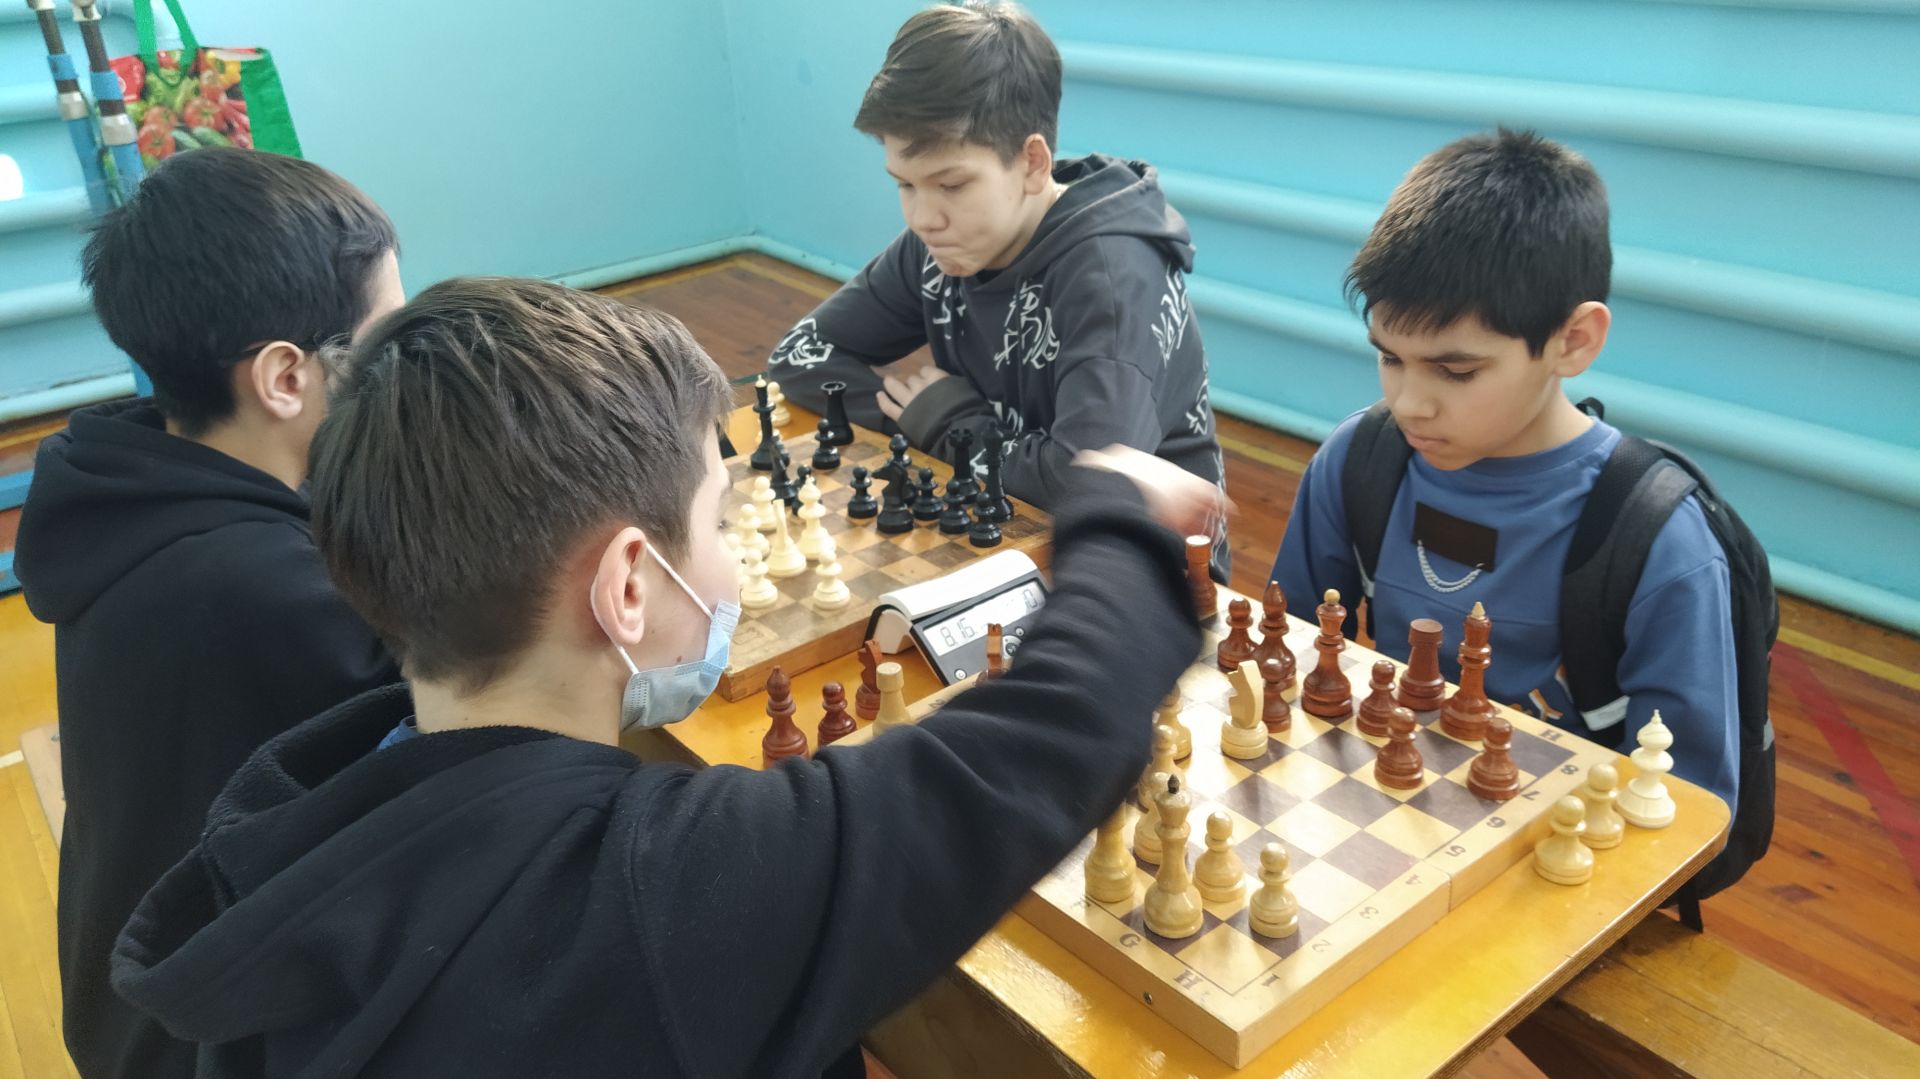 В Ашитбашской школе прошли республиканские соревнования по шахматам